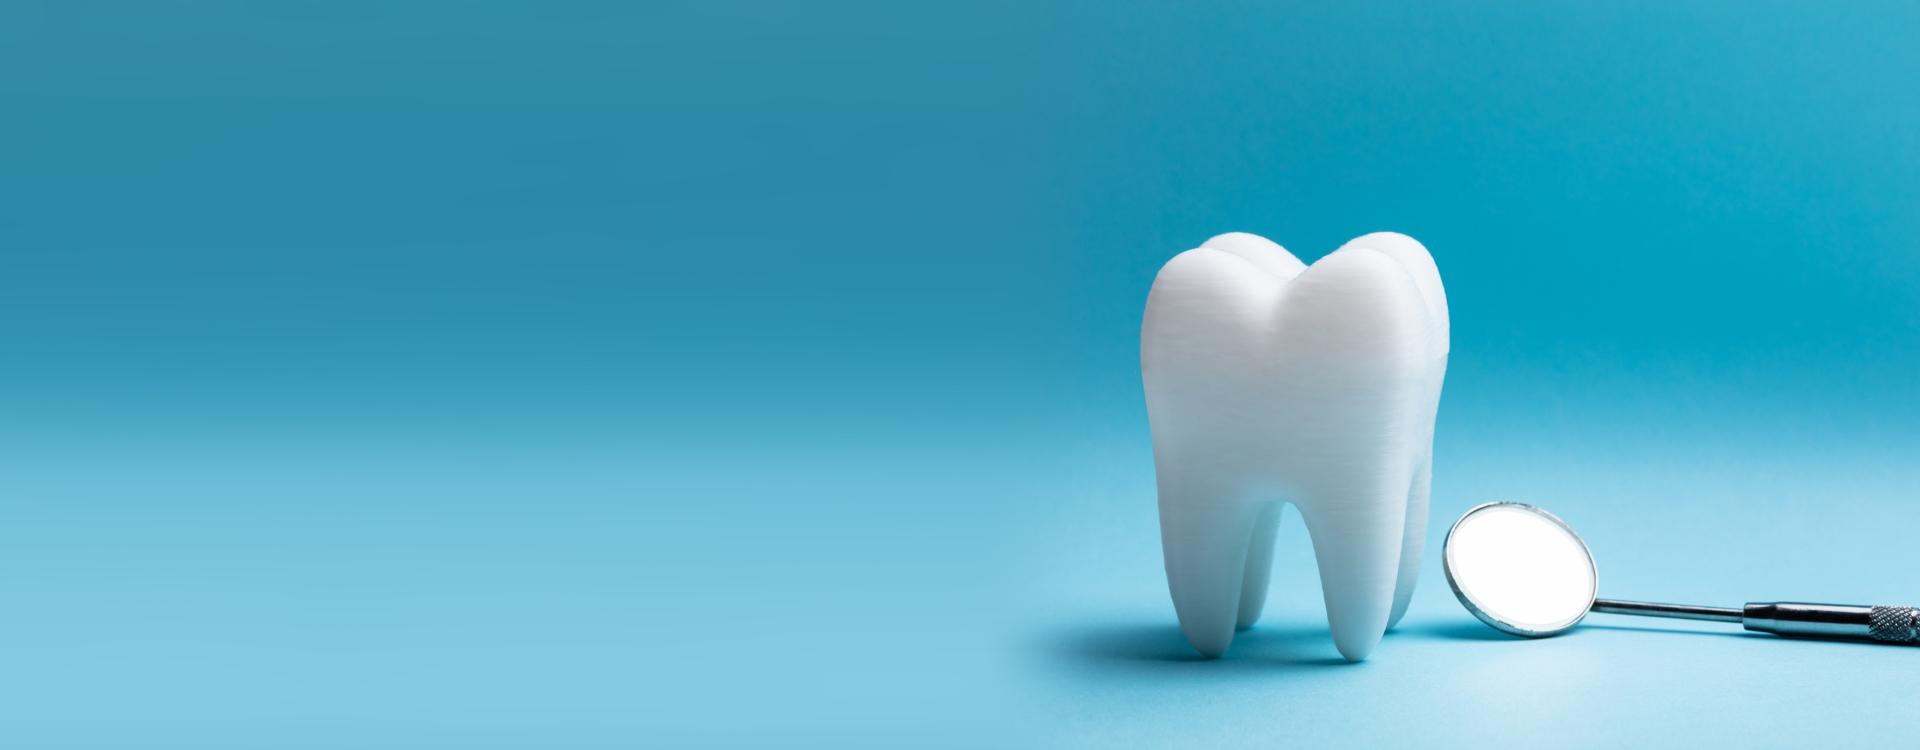 Ząb i narzędzie stomatologiczne